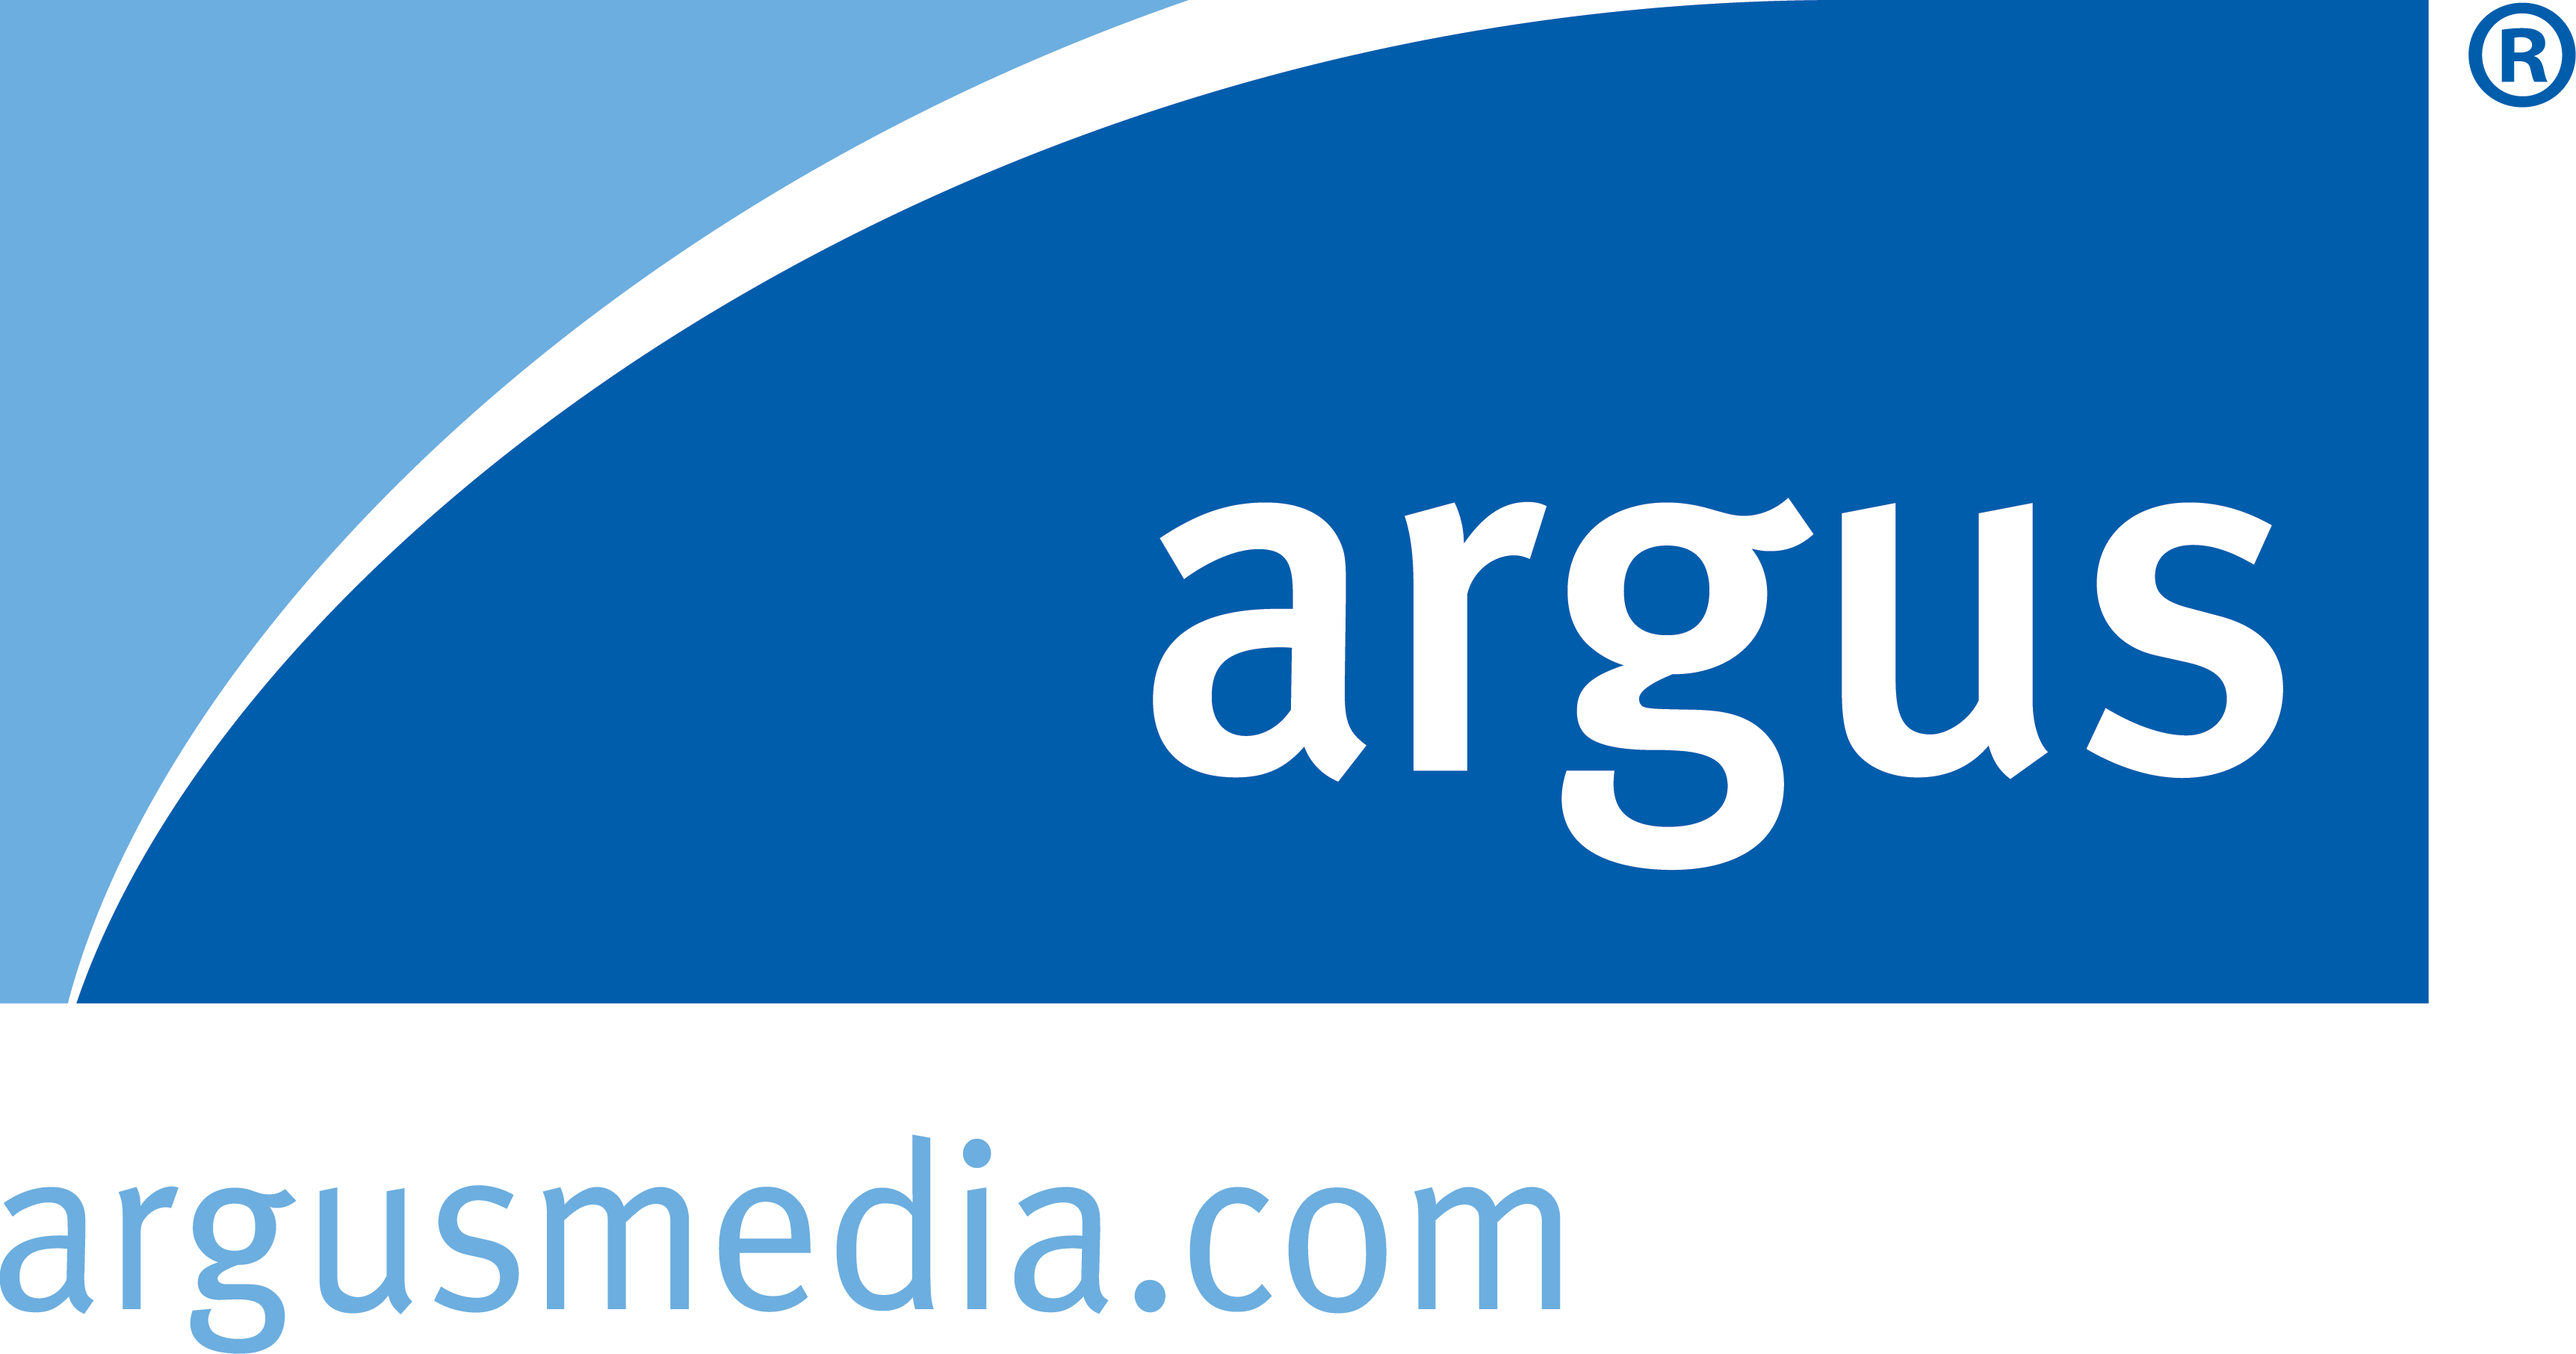 Argus logo Blue url left Digital